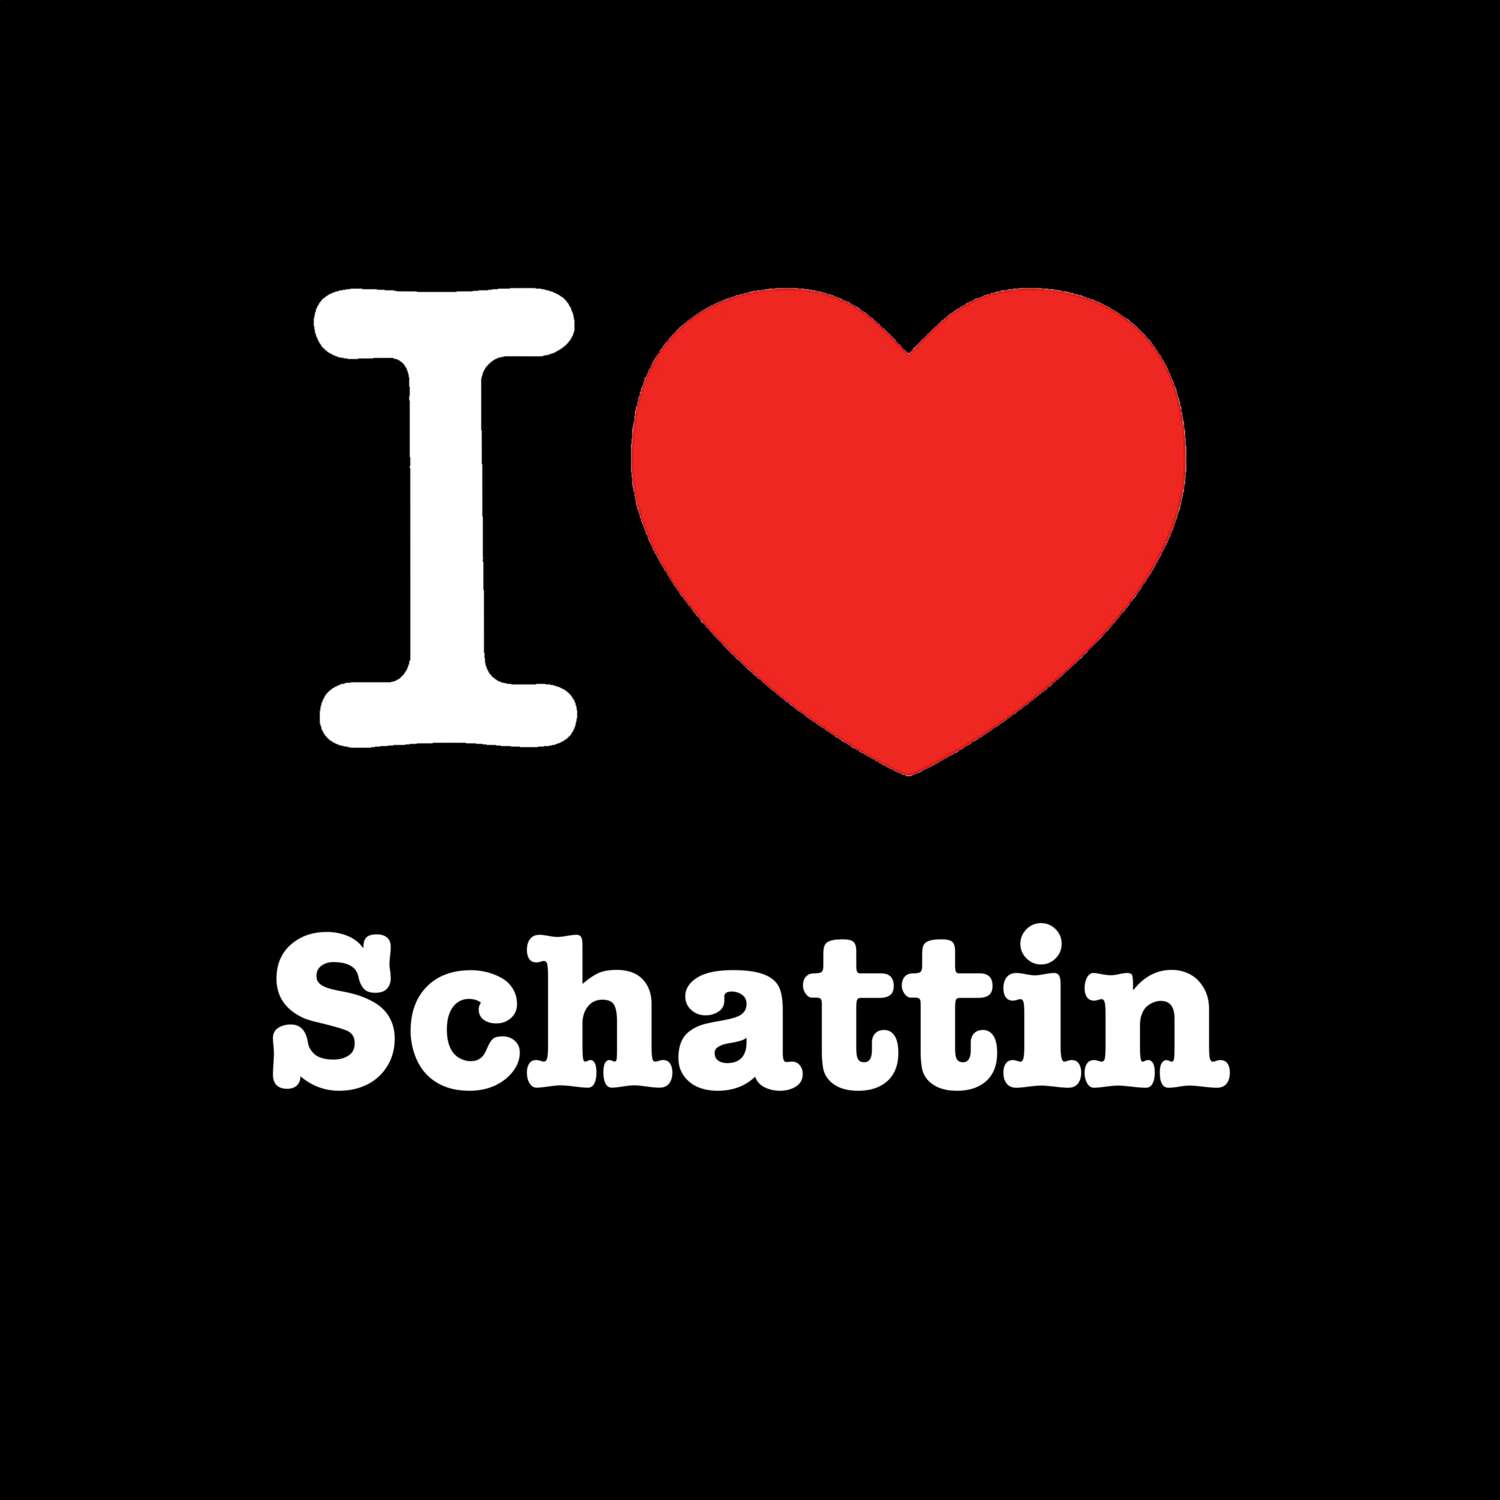 Schattin T-Shirt »I love«